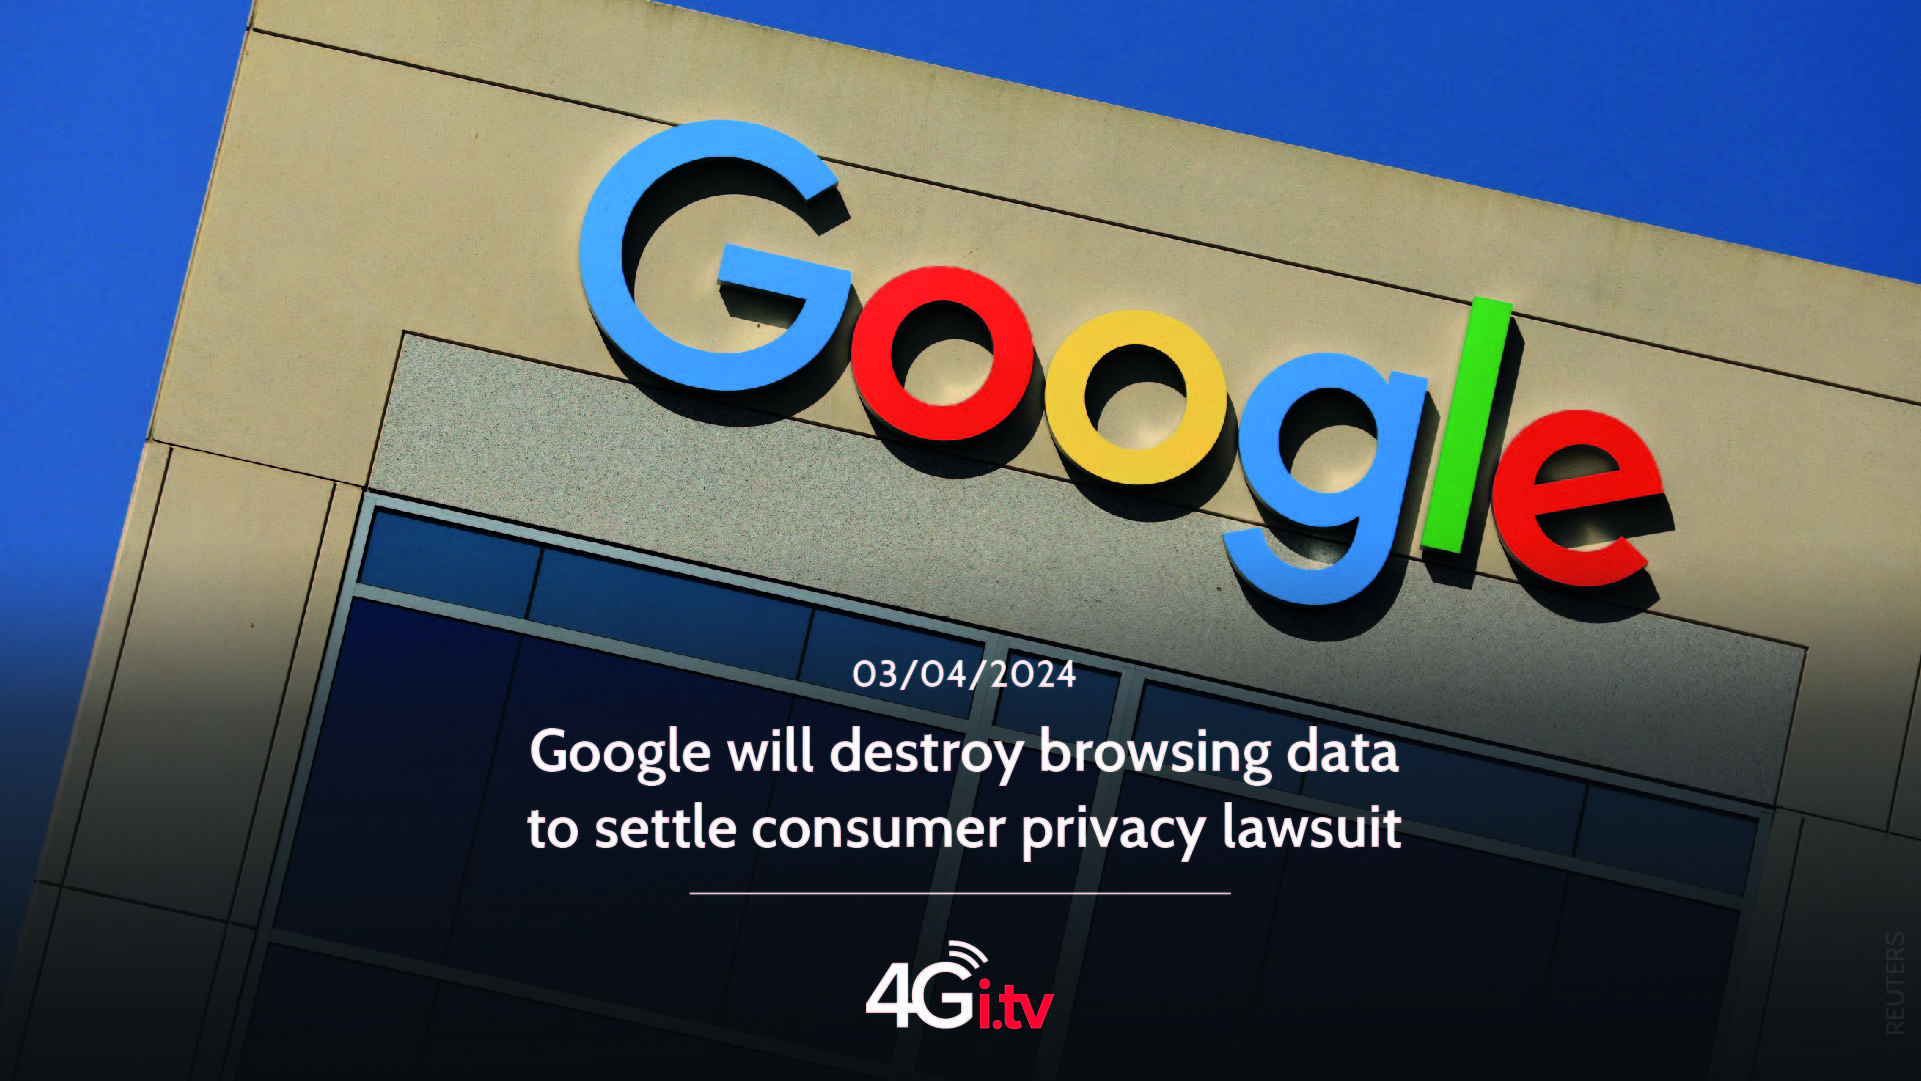 Lesen Sie mehr über den Artikel Google will destroy browsing data to settle consumer privacy lawsuit